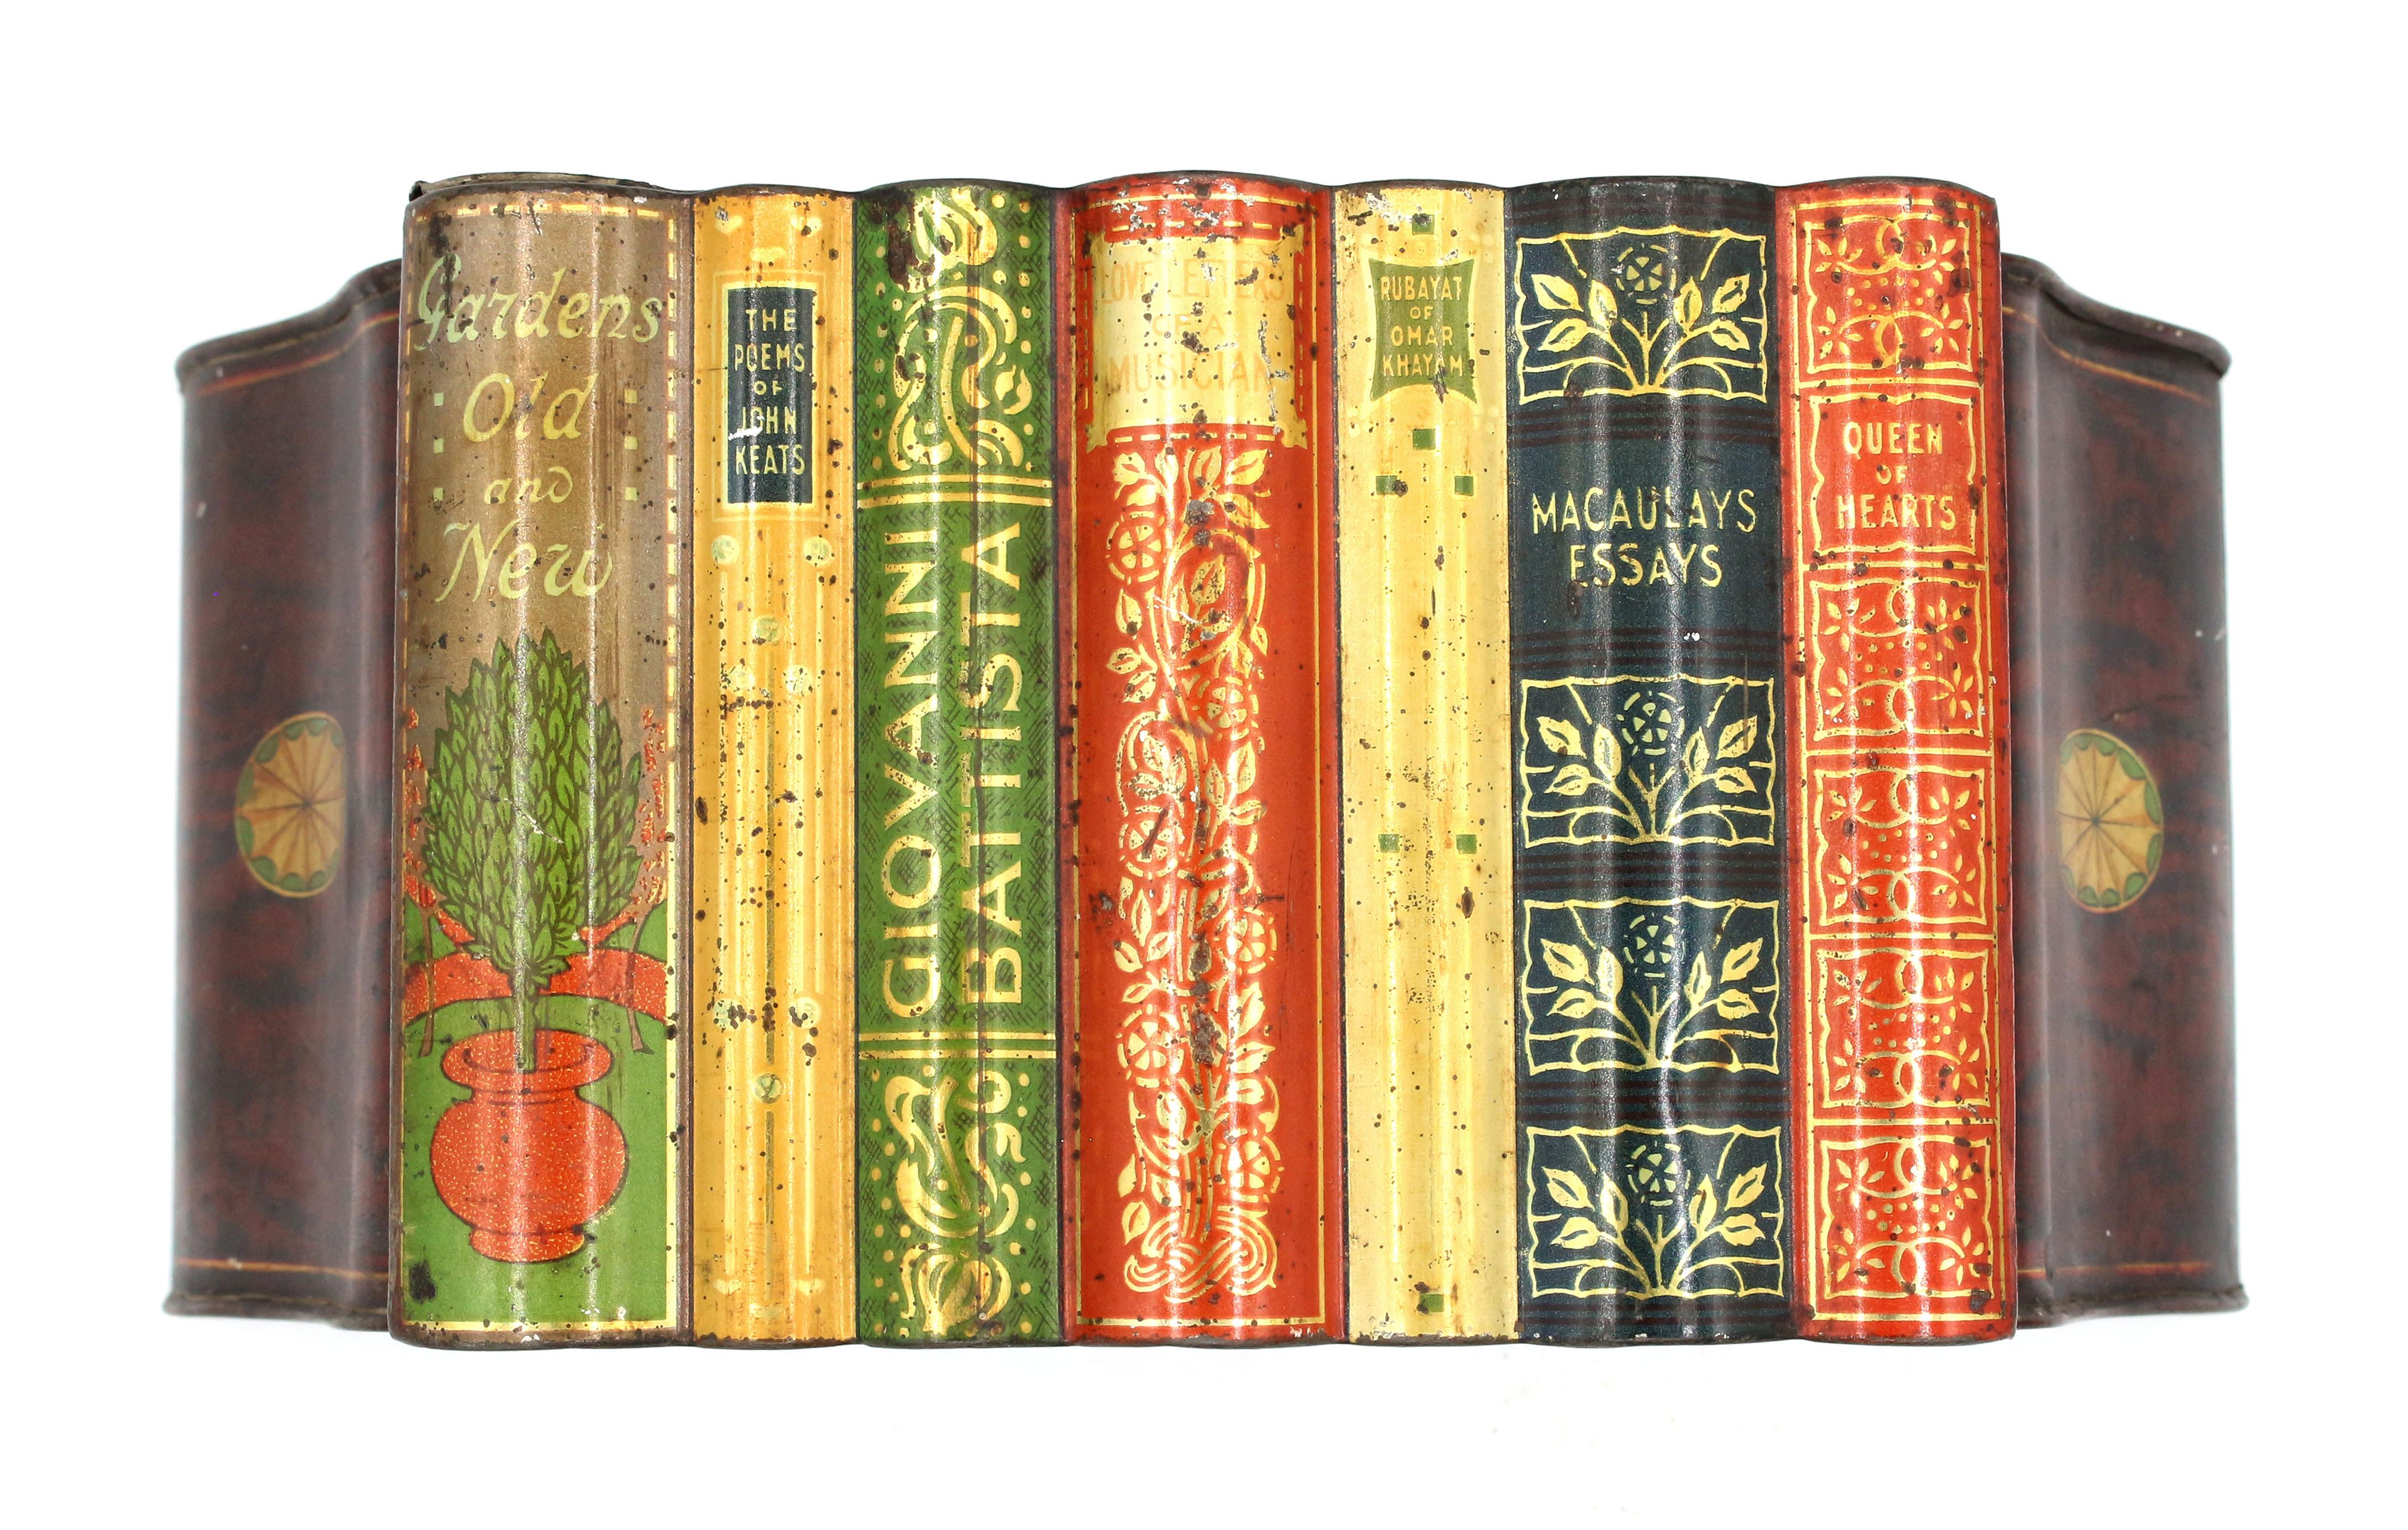 Boîte en fer blanc en forme de livre et de serre-livres par Huntley & Palmer, début du 20e siècle, Anglais. Faux rayonnage de livres entre des serre-livres en faux acajou et incrustation de paterae. Divers titres de livres bien décorés avec de la